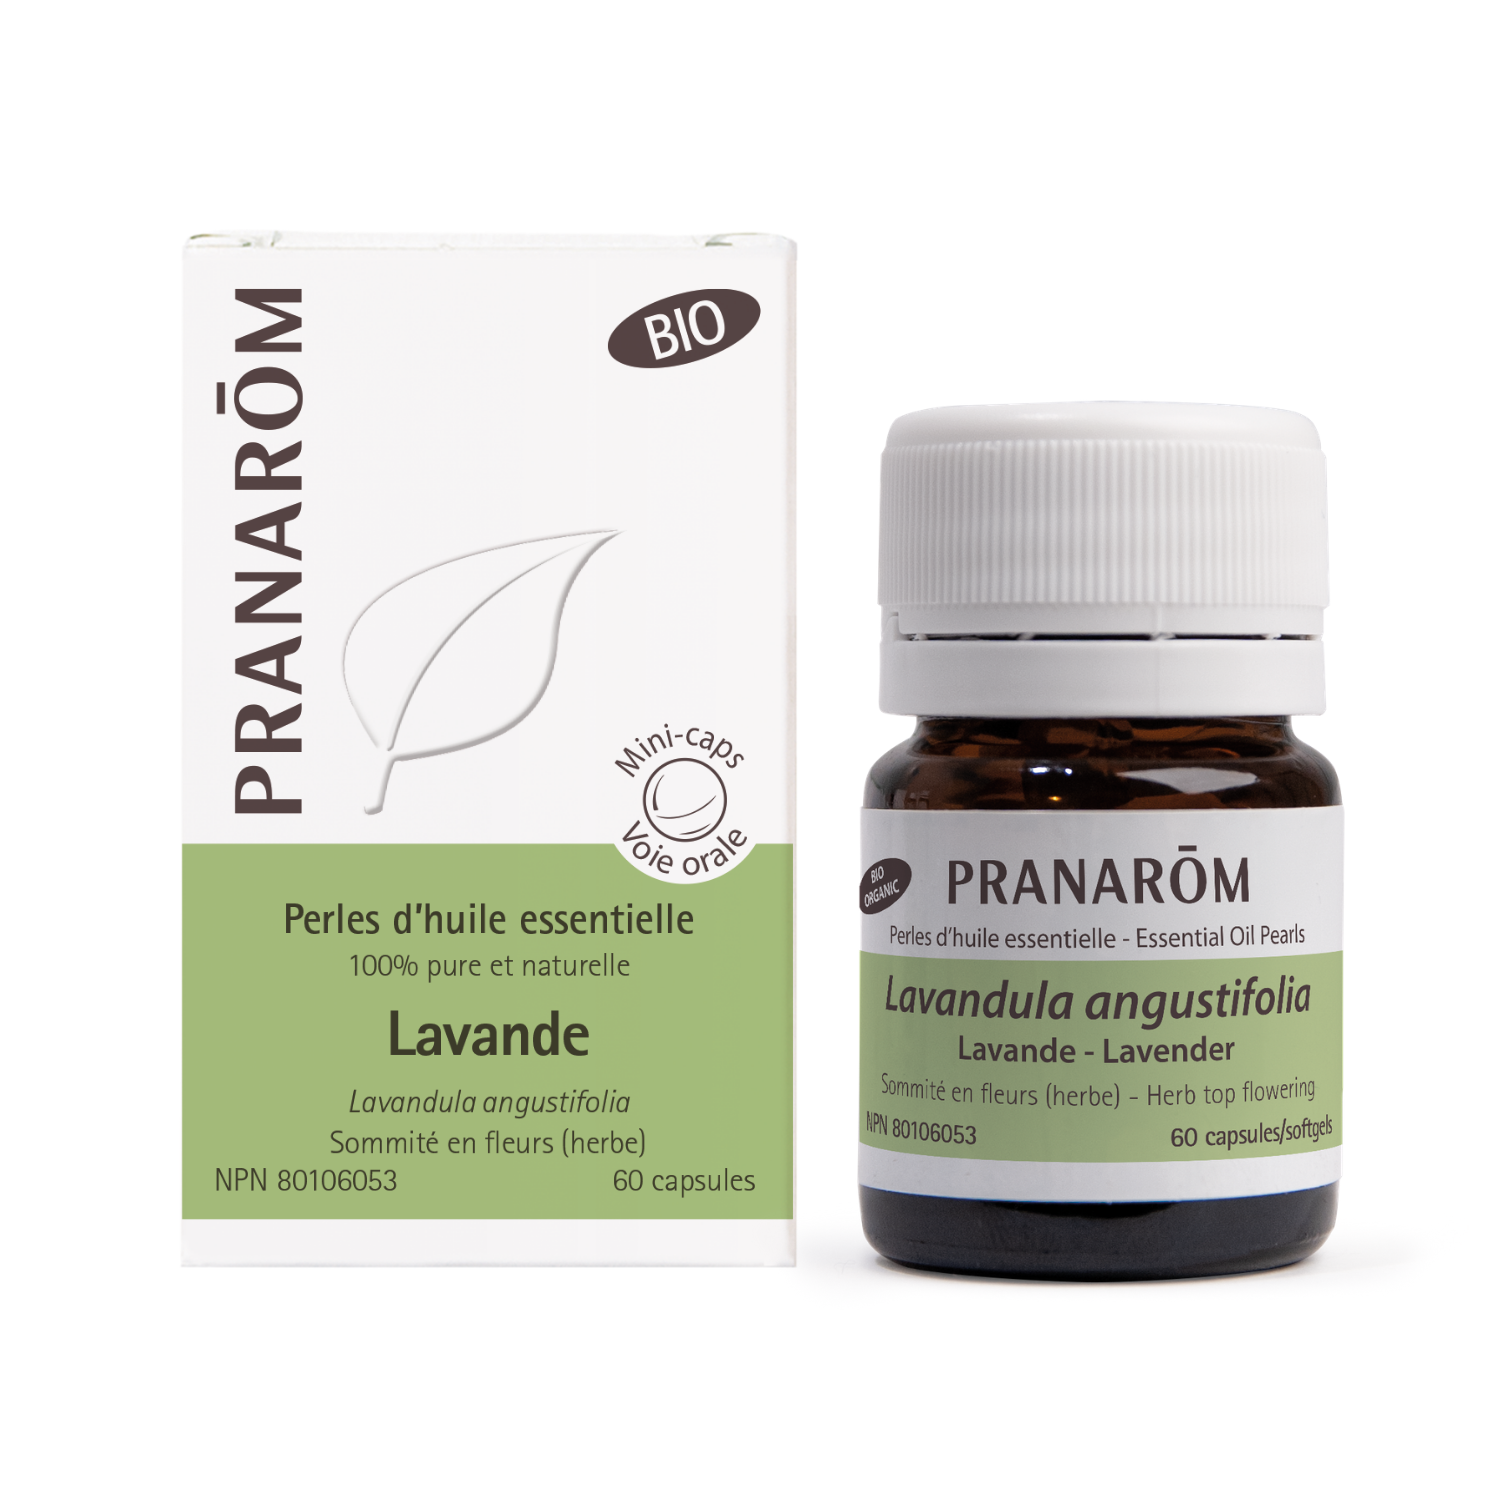 Lavande perles d'huile essentielle - Pranarom